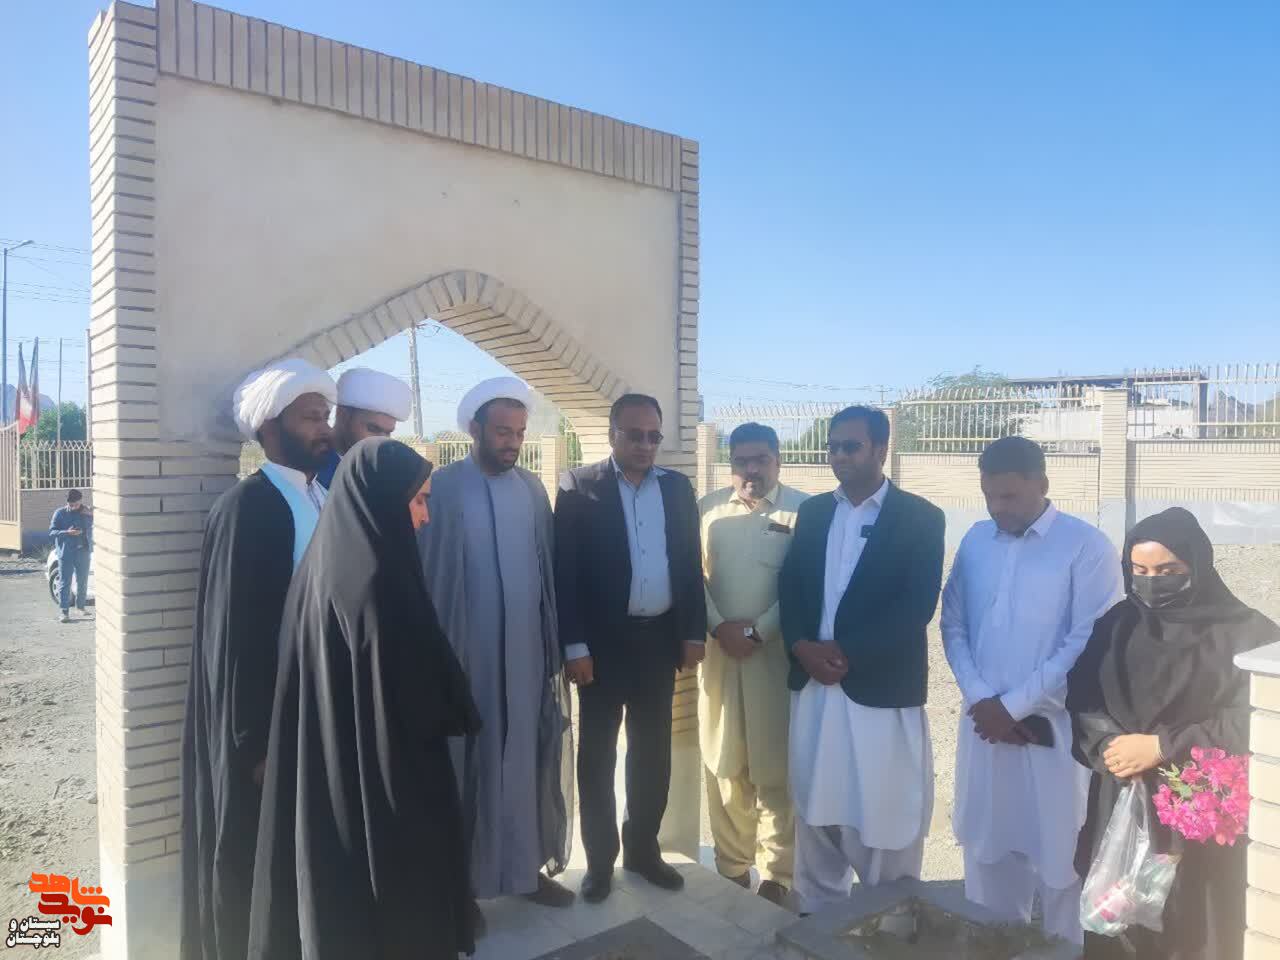 غبار روبی و عطر افشانی مزار شهید عبدالغنی ملازهی در نیکشهر